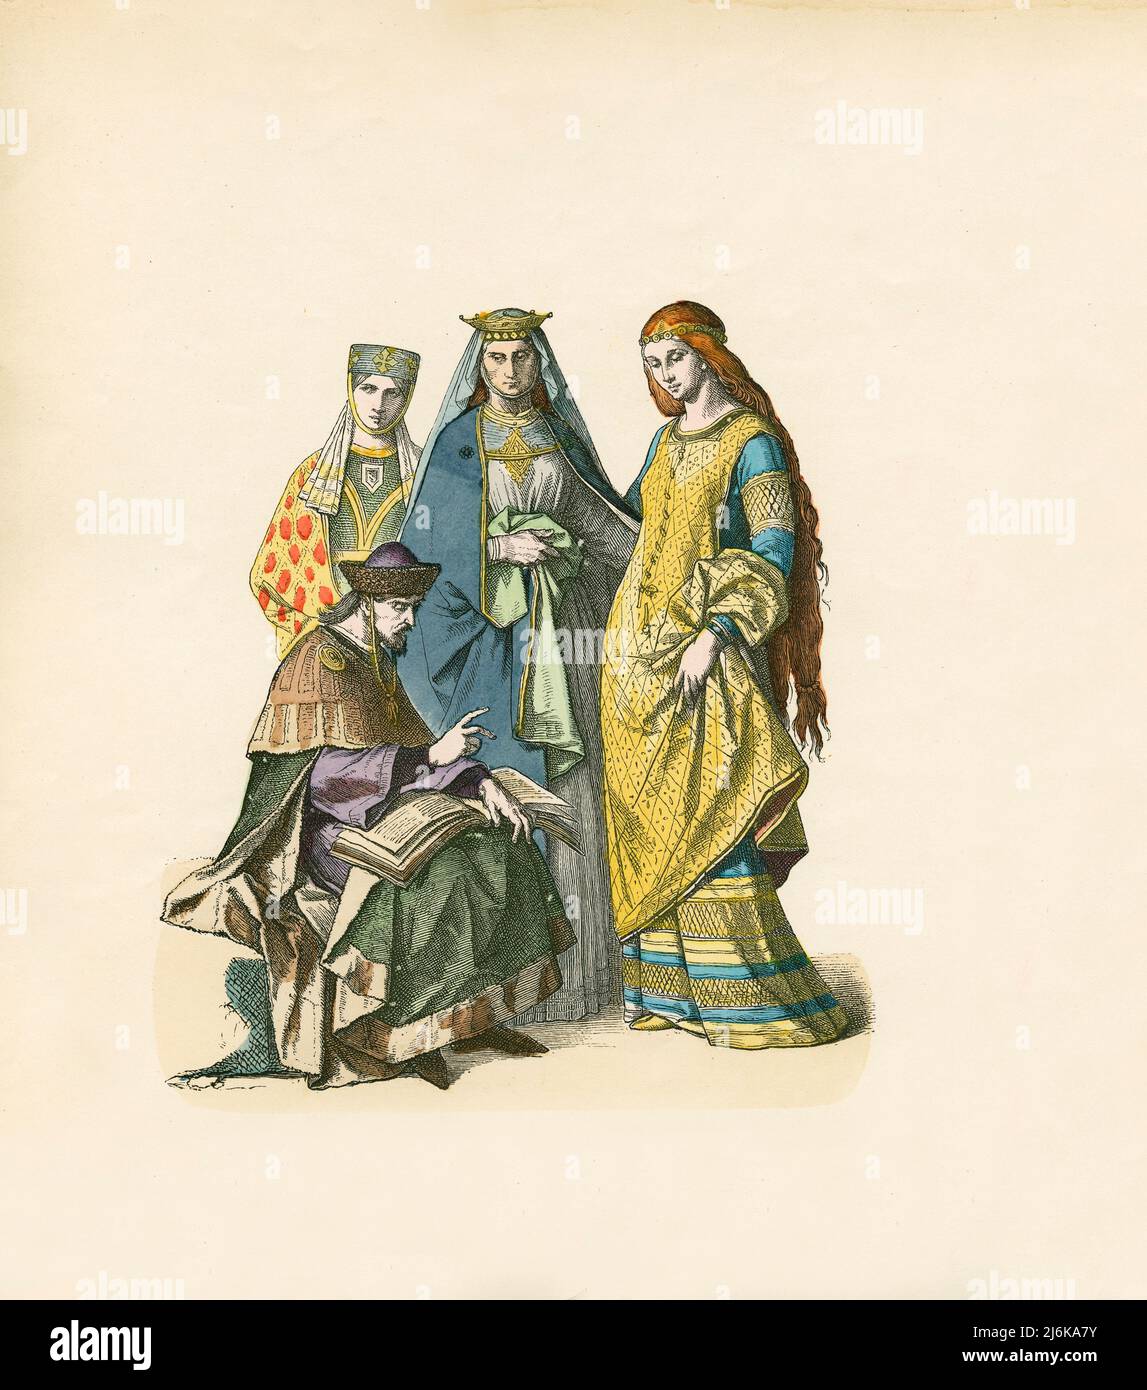 Príncipe Alemán y Damas Alemanas, Siglo 13th, Ilustración, Historia del Traje, Braun & Schneider, Munich, Alemania, 1861-1880 Foto de stock